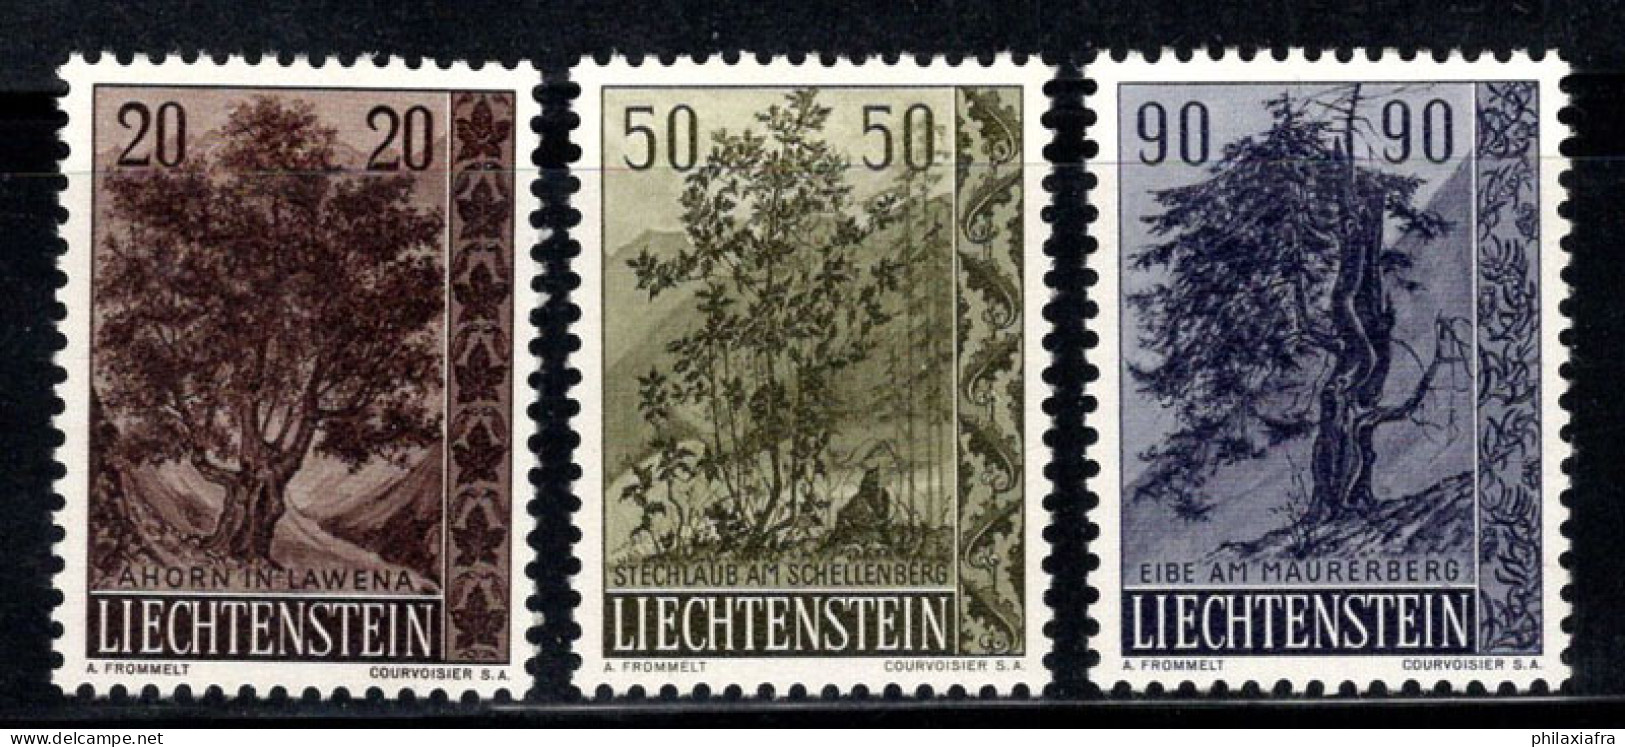 Liechtenstein 1958 Mi. 371-373 Neuf * MH 100% Arbres, Flore - Neufs